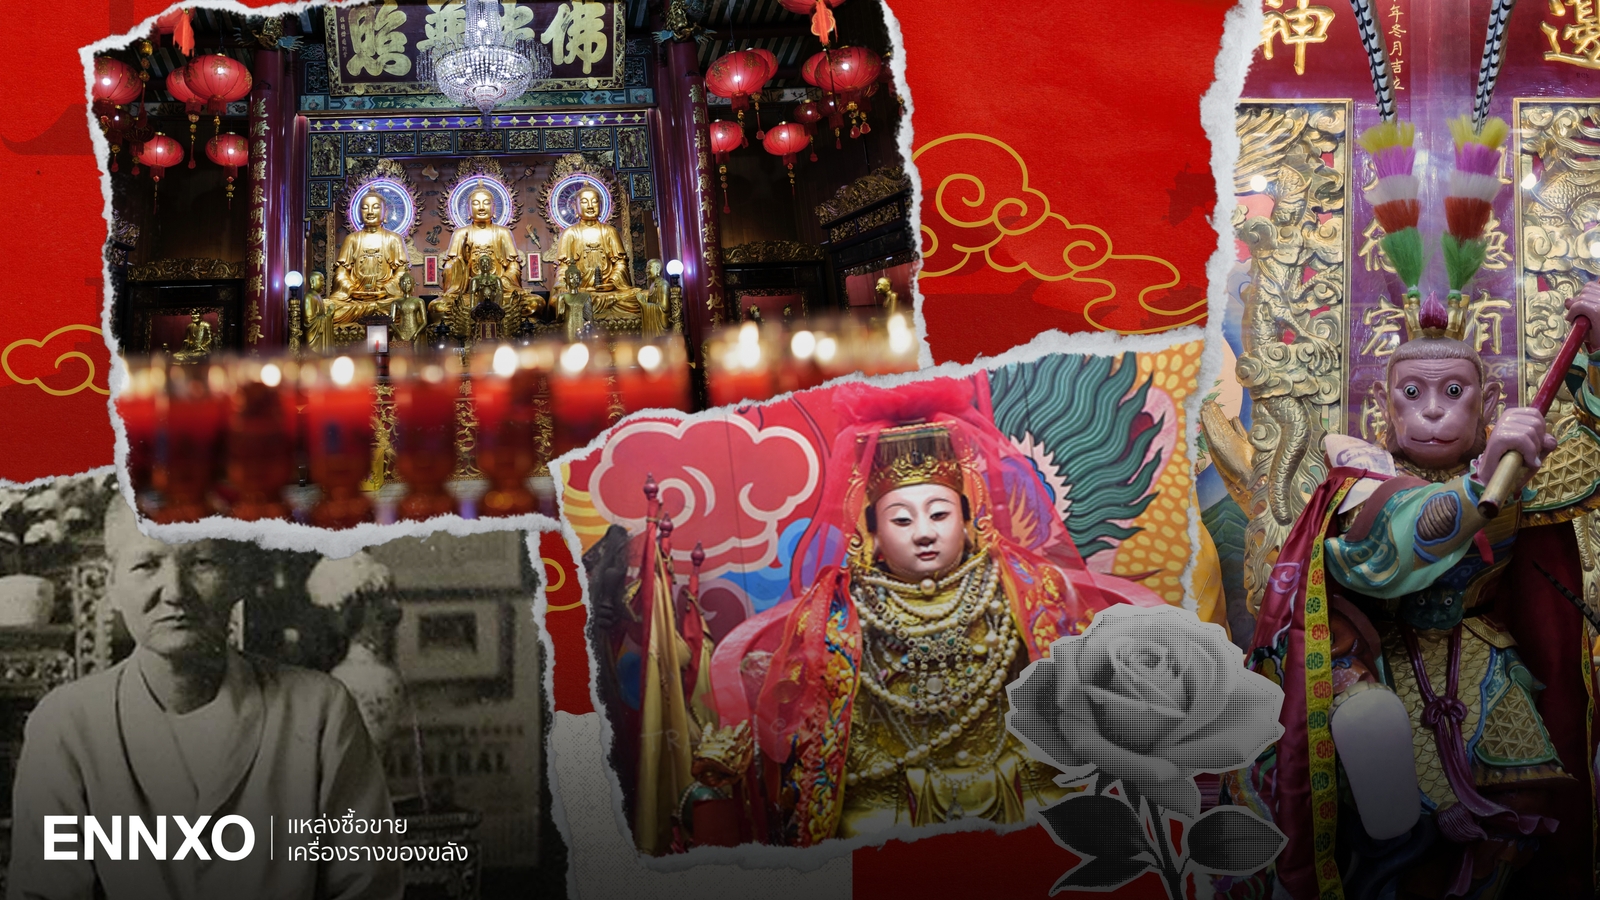 ไหว้พระเยาวราช ขอพรความรัก โชคลาภ วัดไทย วัดจีน ศาลเจ้าวัดในเยาวราช